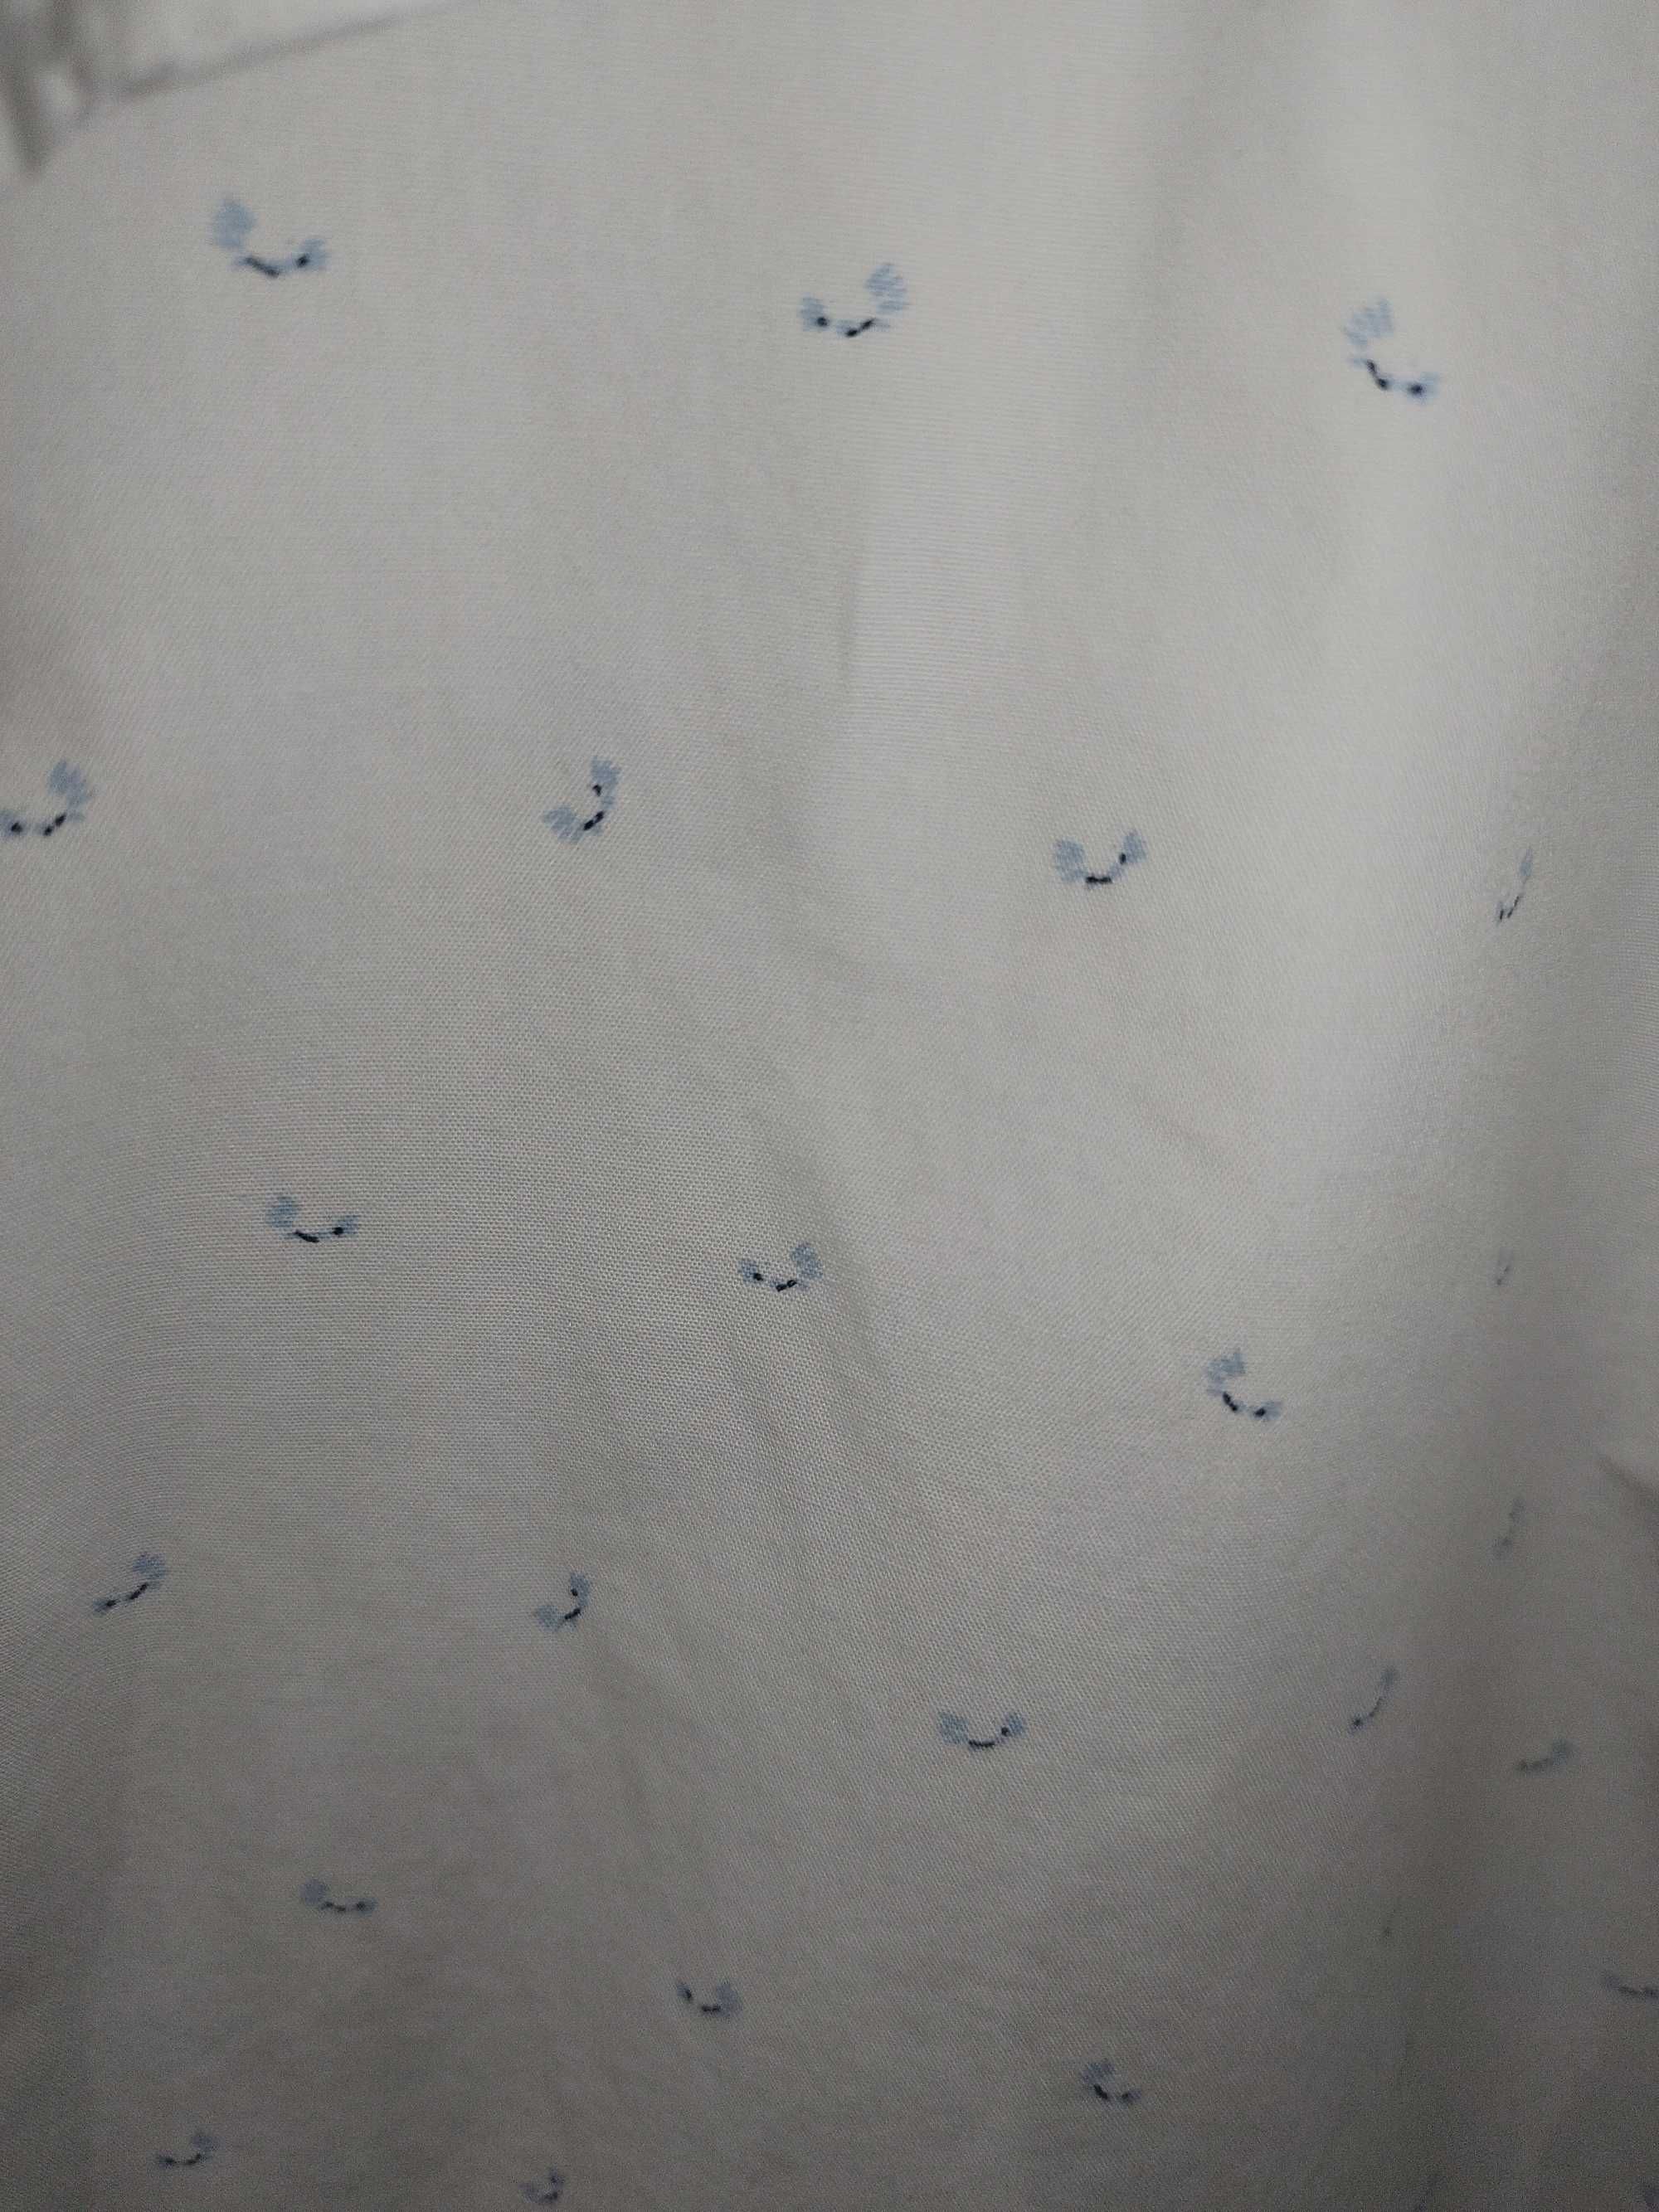 Рубашка Massimo Dutti 100% хлопок высшего сорта Finest Fabric Премиум.